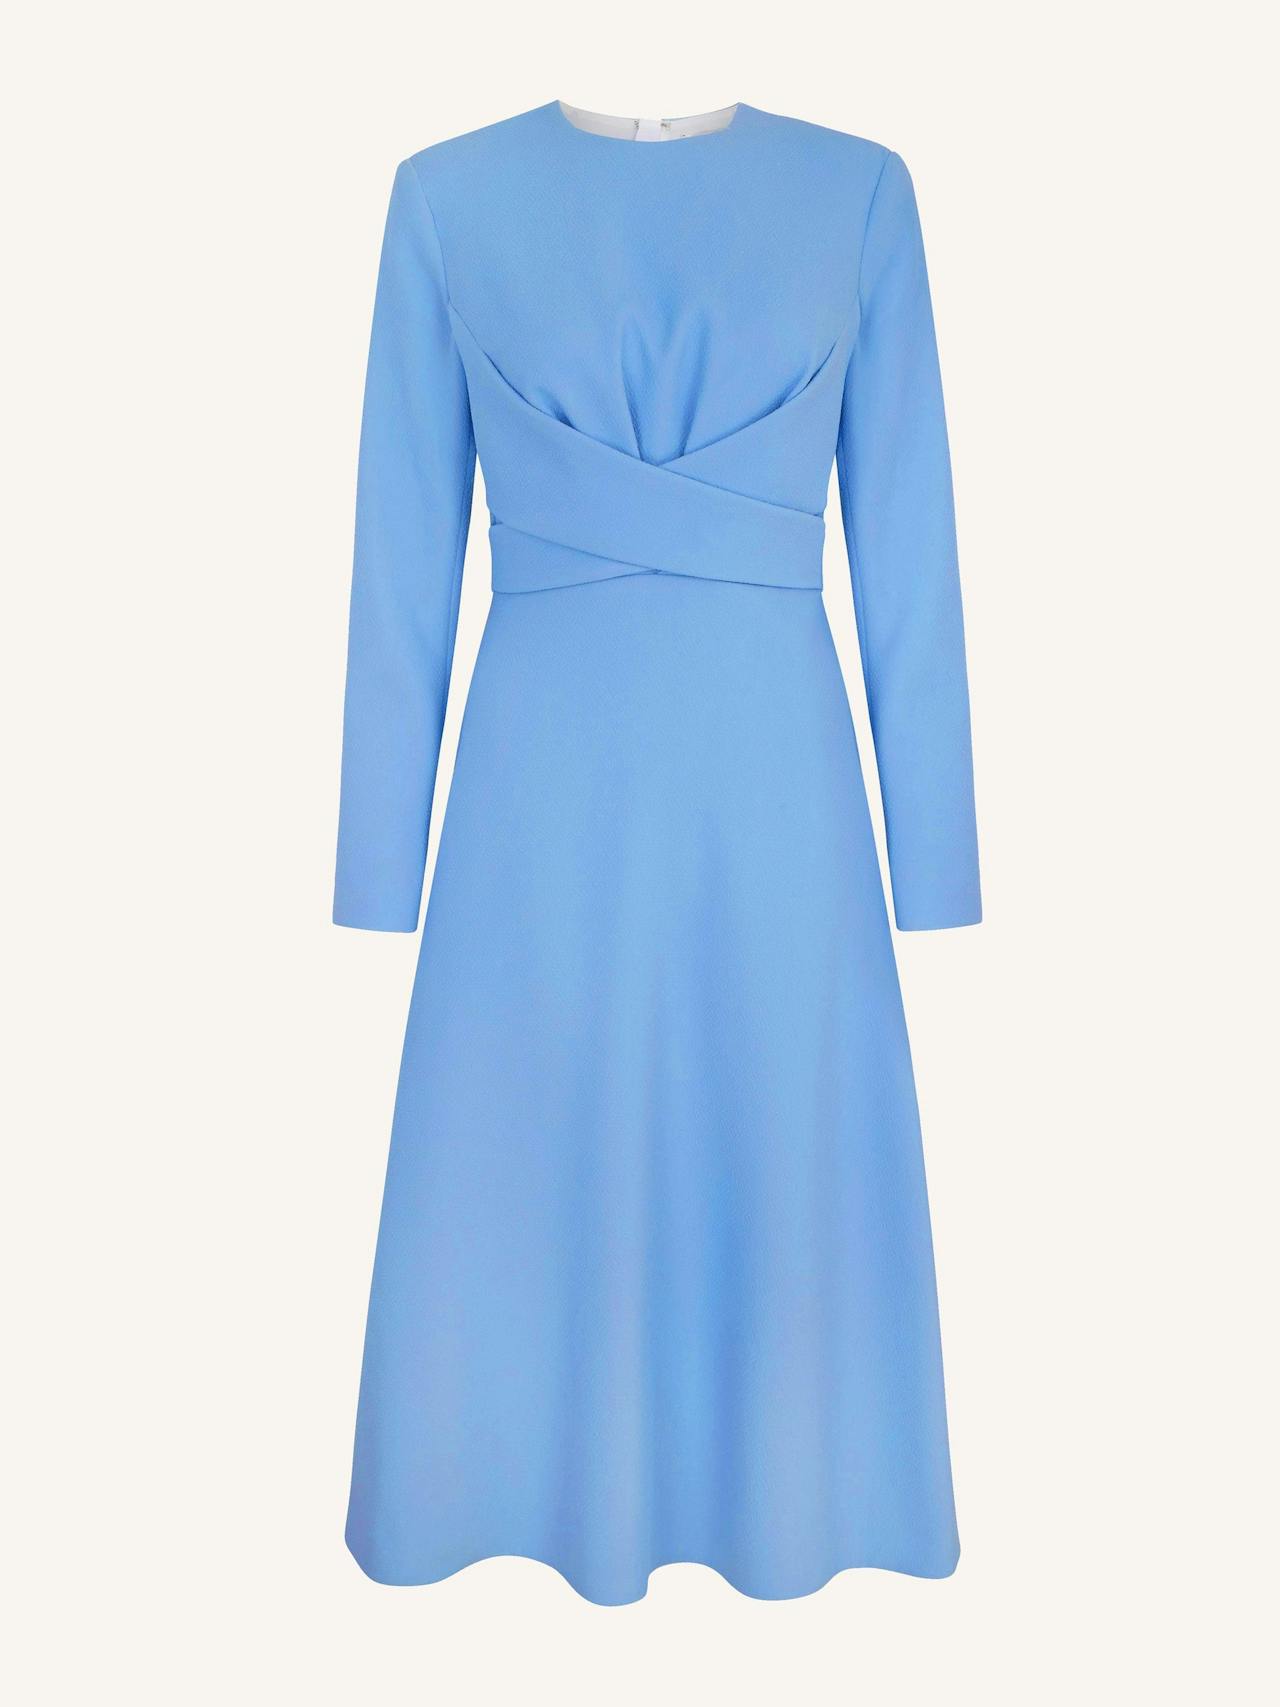 Elta celestial blue double crepe dress